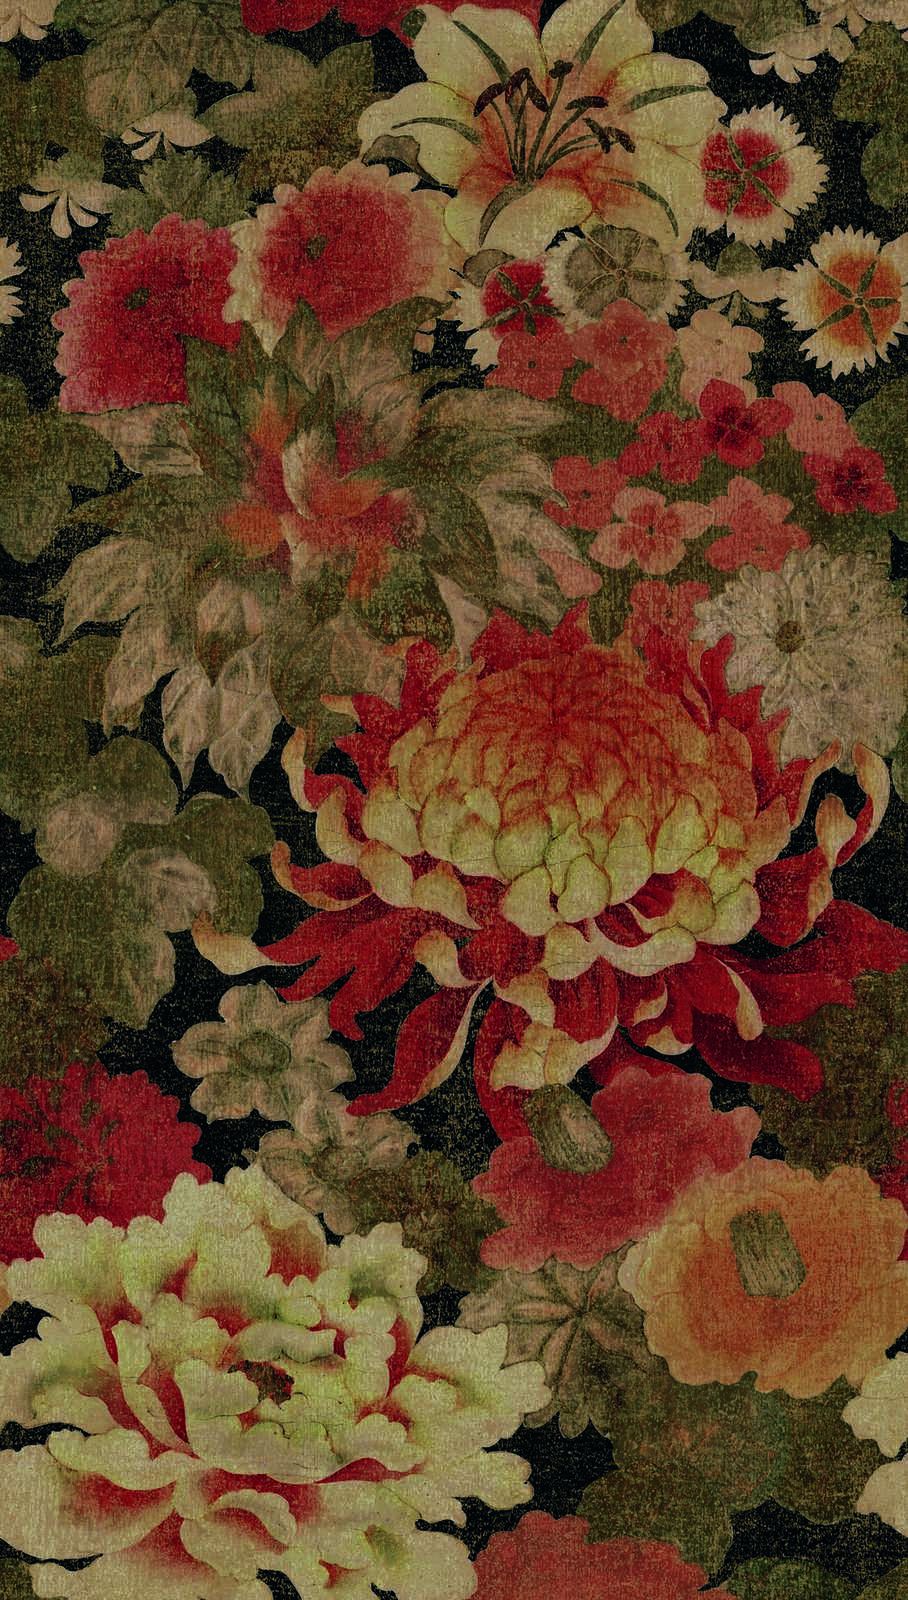             Papier peint intissé à grands motifs floraux - beige, rouge, vert
        